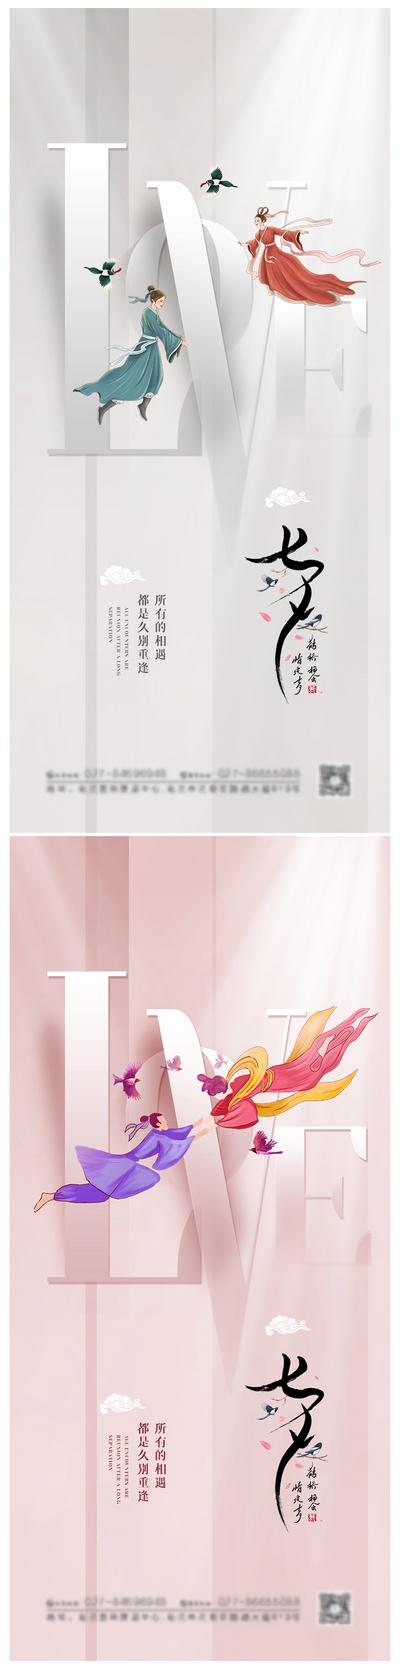 南门网 海报 房地产 中国传统节日 七夕 情人节 系列 浪漫 牛郎织女